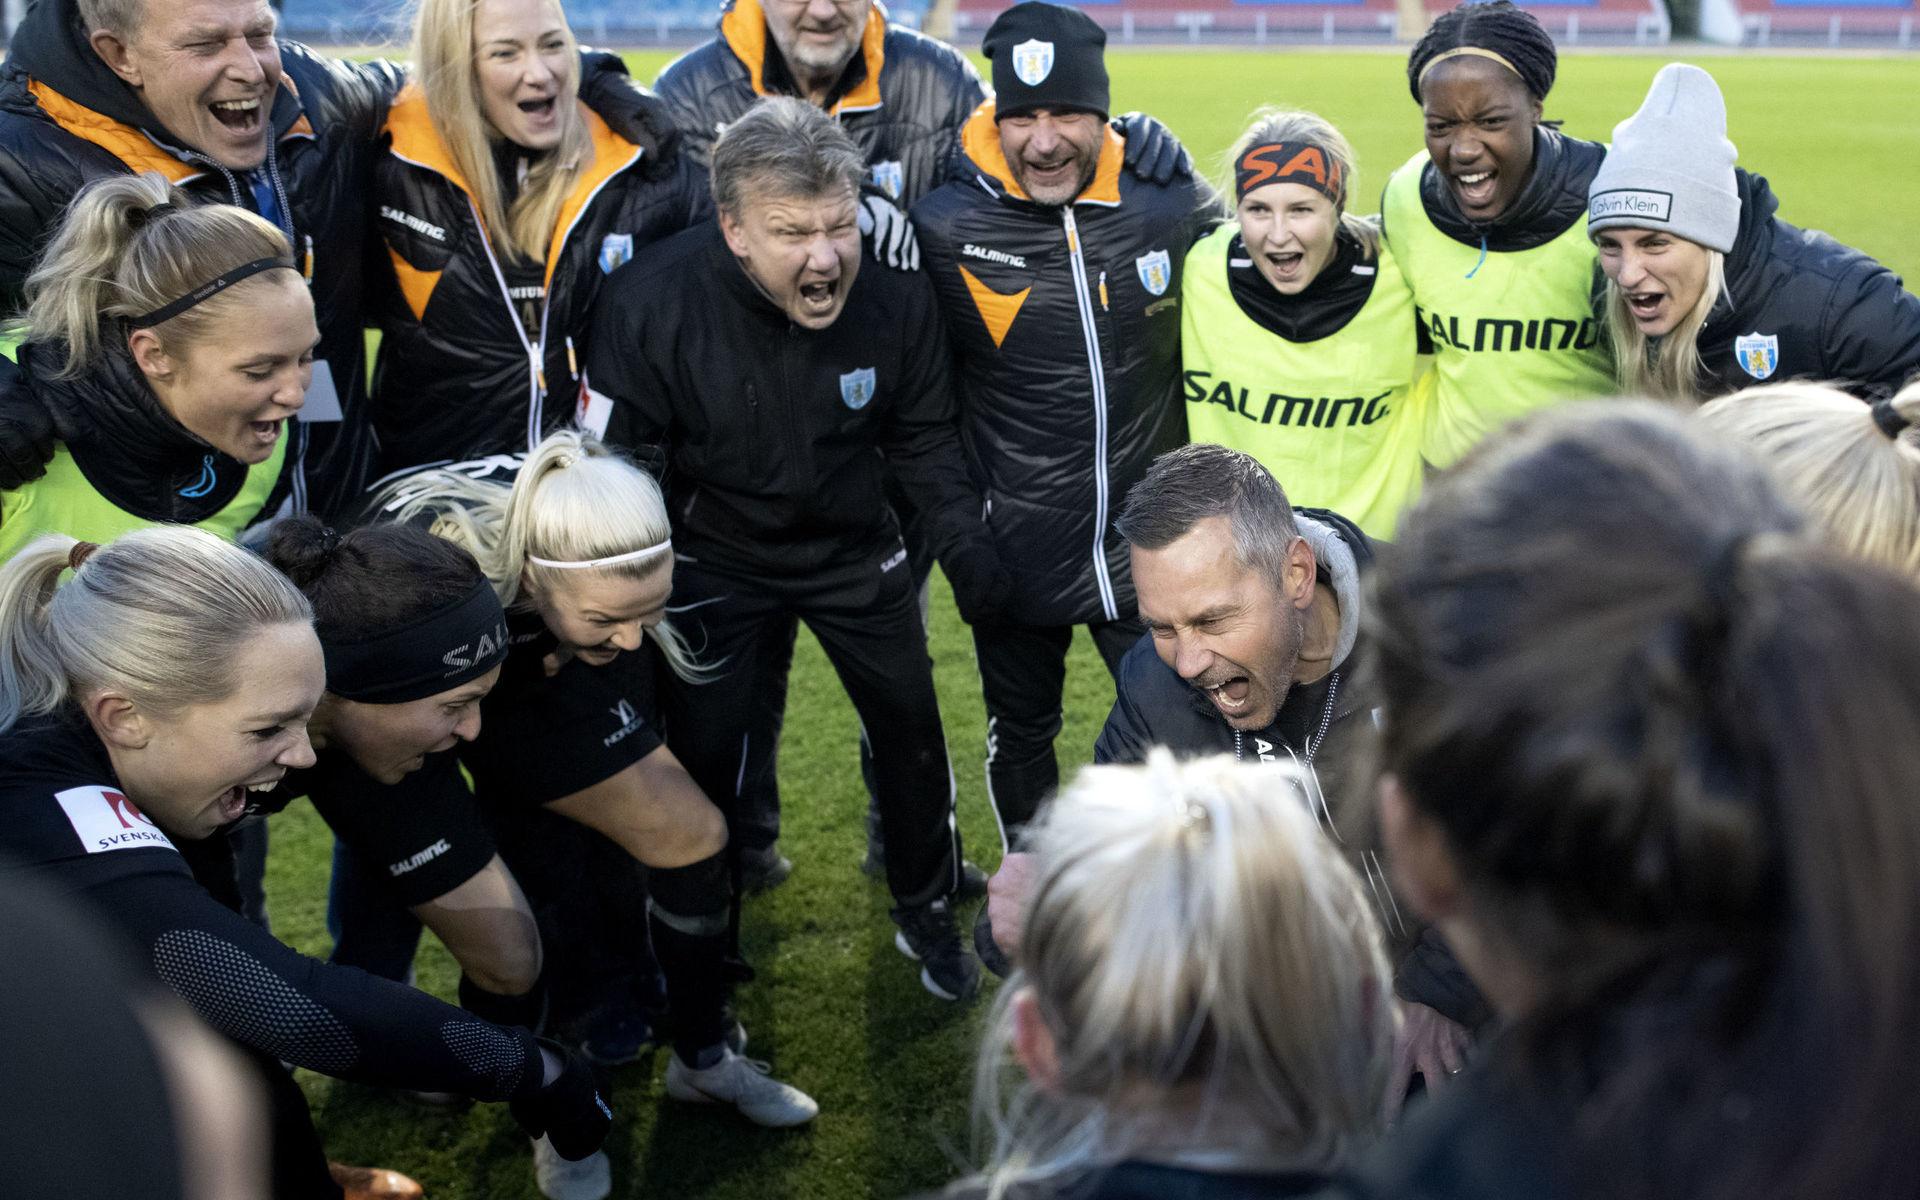 Jörgen Ericson, Markus Lantz och spelarna i FC Göteborg jublar efter lördagens fotbollsmatch i damallsvenskan mellan Kopparberg/Göteborg FC och FC Rosengård på Ullevi. 